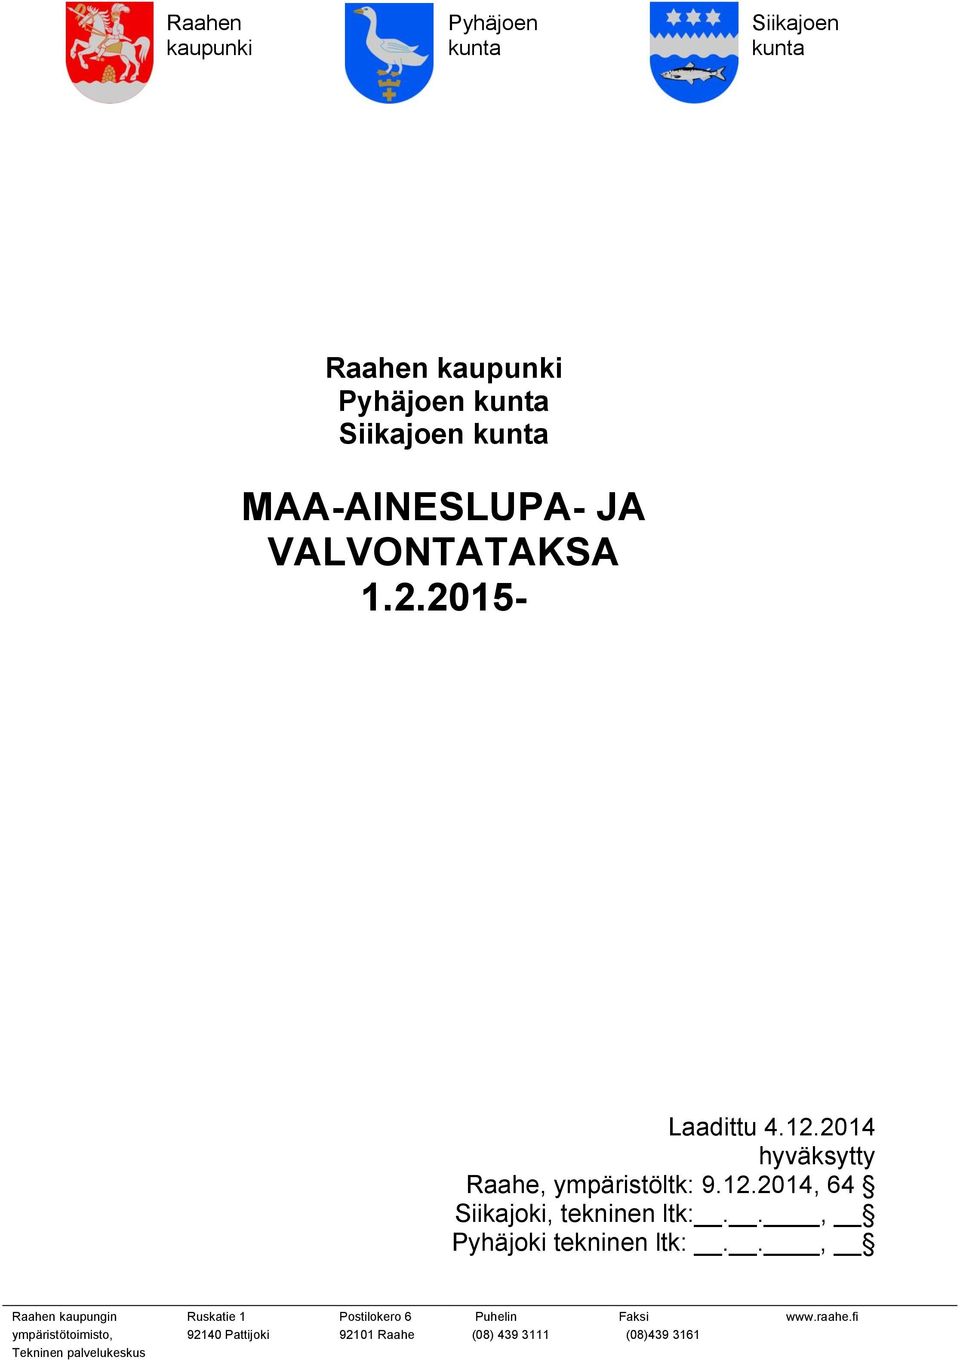 1.2.2015- Laadittu 4.12.2014 hyväksytty Raahe, ympäristöltk: 9.